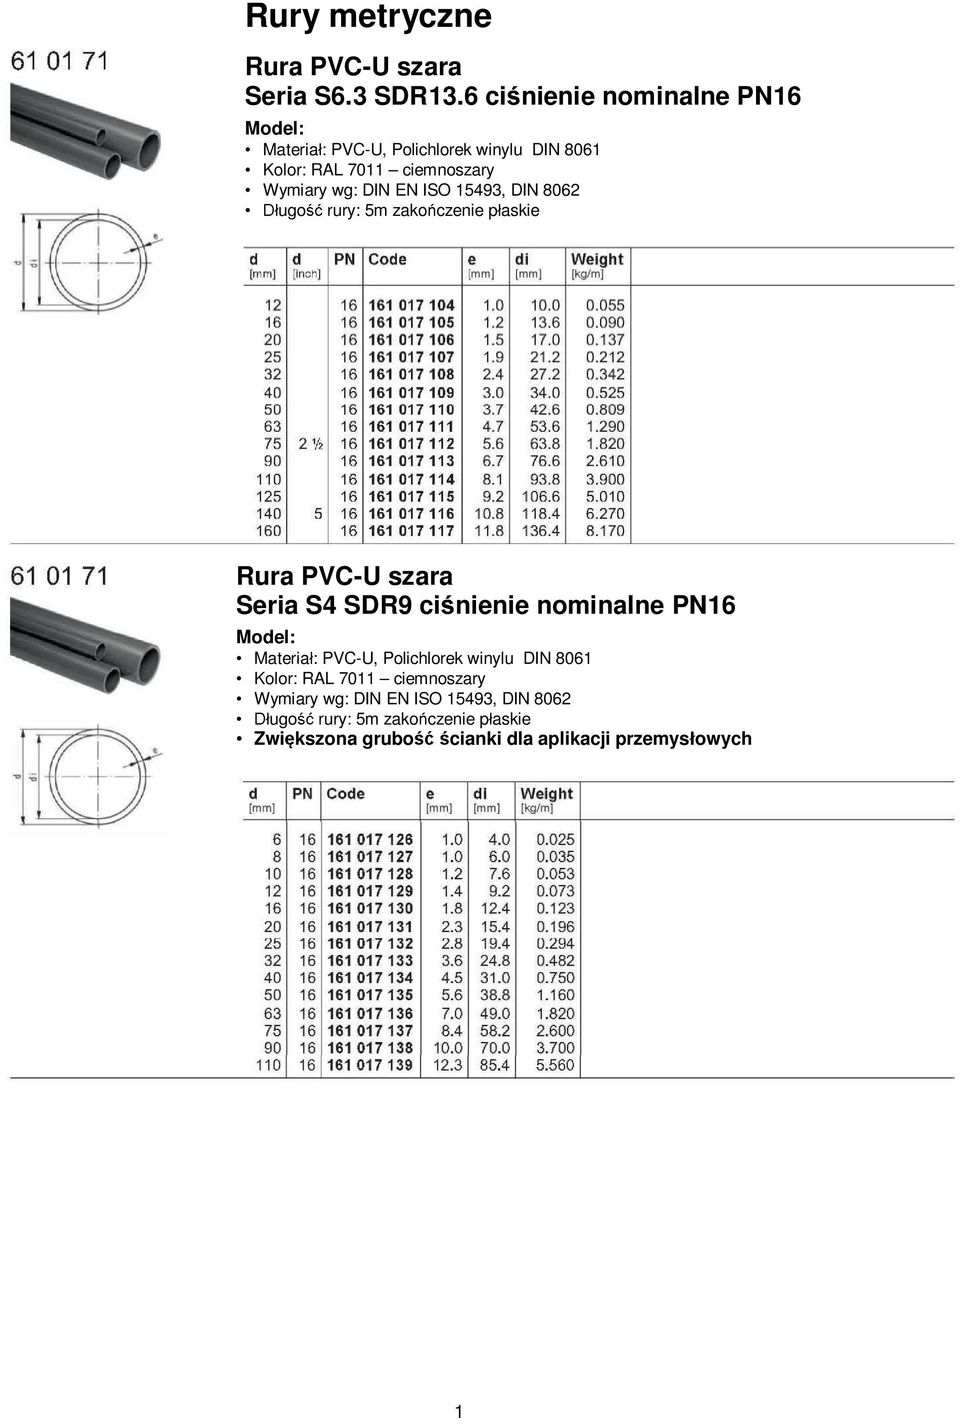 ISO 15493, DIN 8062 ugo rury: 5m zako czenie p askie Rura PVC-U szara Seria S4 SDR9 ci nienie nominalne PN16 Materia :